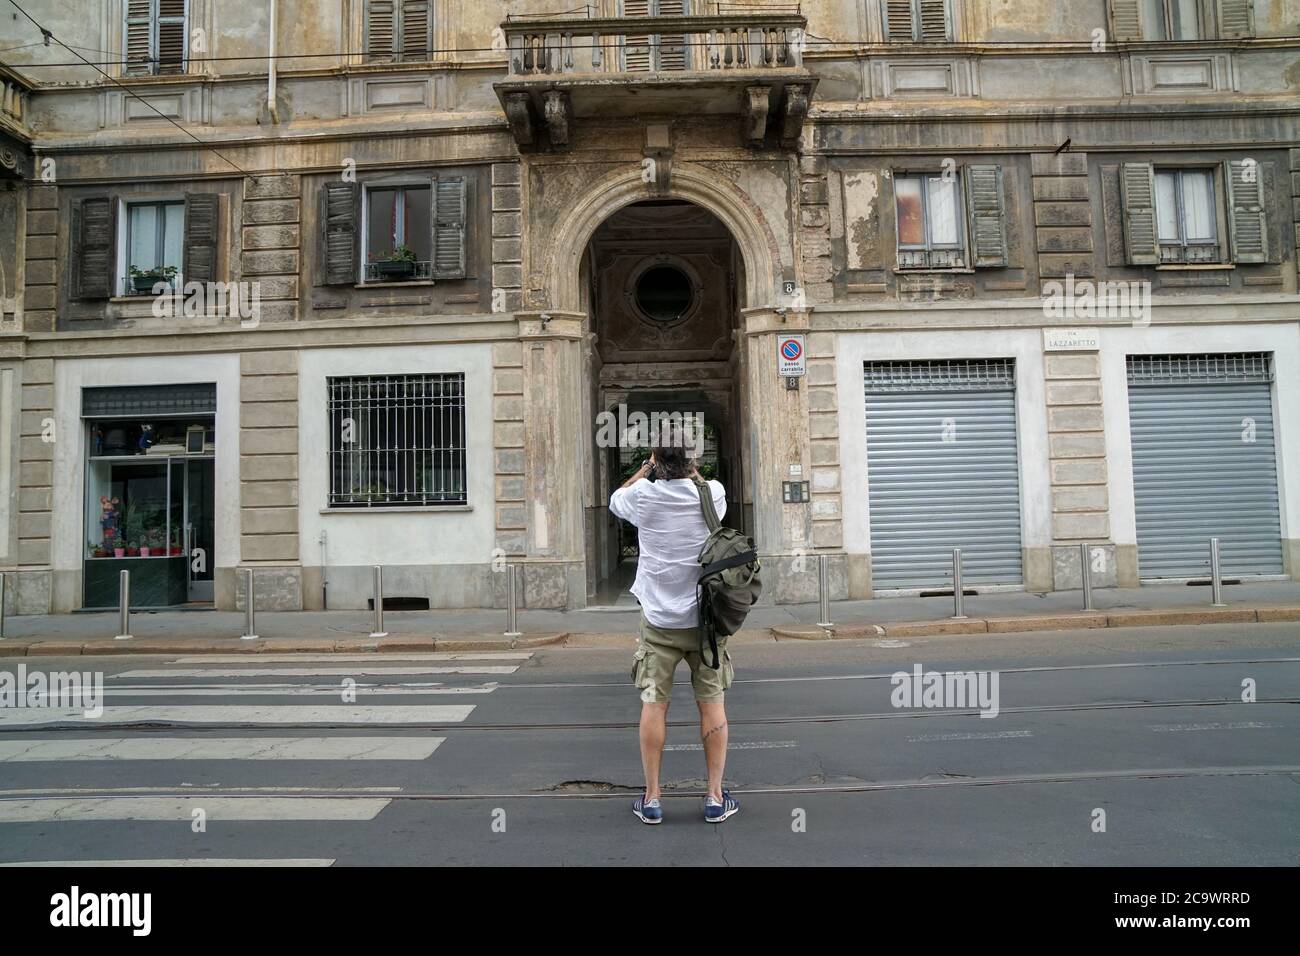 Milano 07/15/2020: Il turista italiano scatta una foto di un vecchio edificio in via Lazzaretto, il 61% degli italiani andrà in vacanza. Il 93% rimarrà in Italia Foto Stock